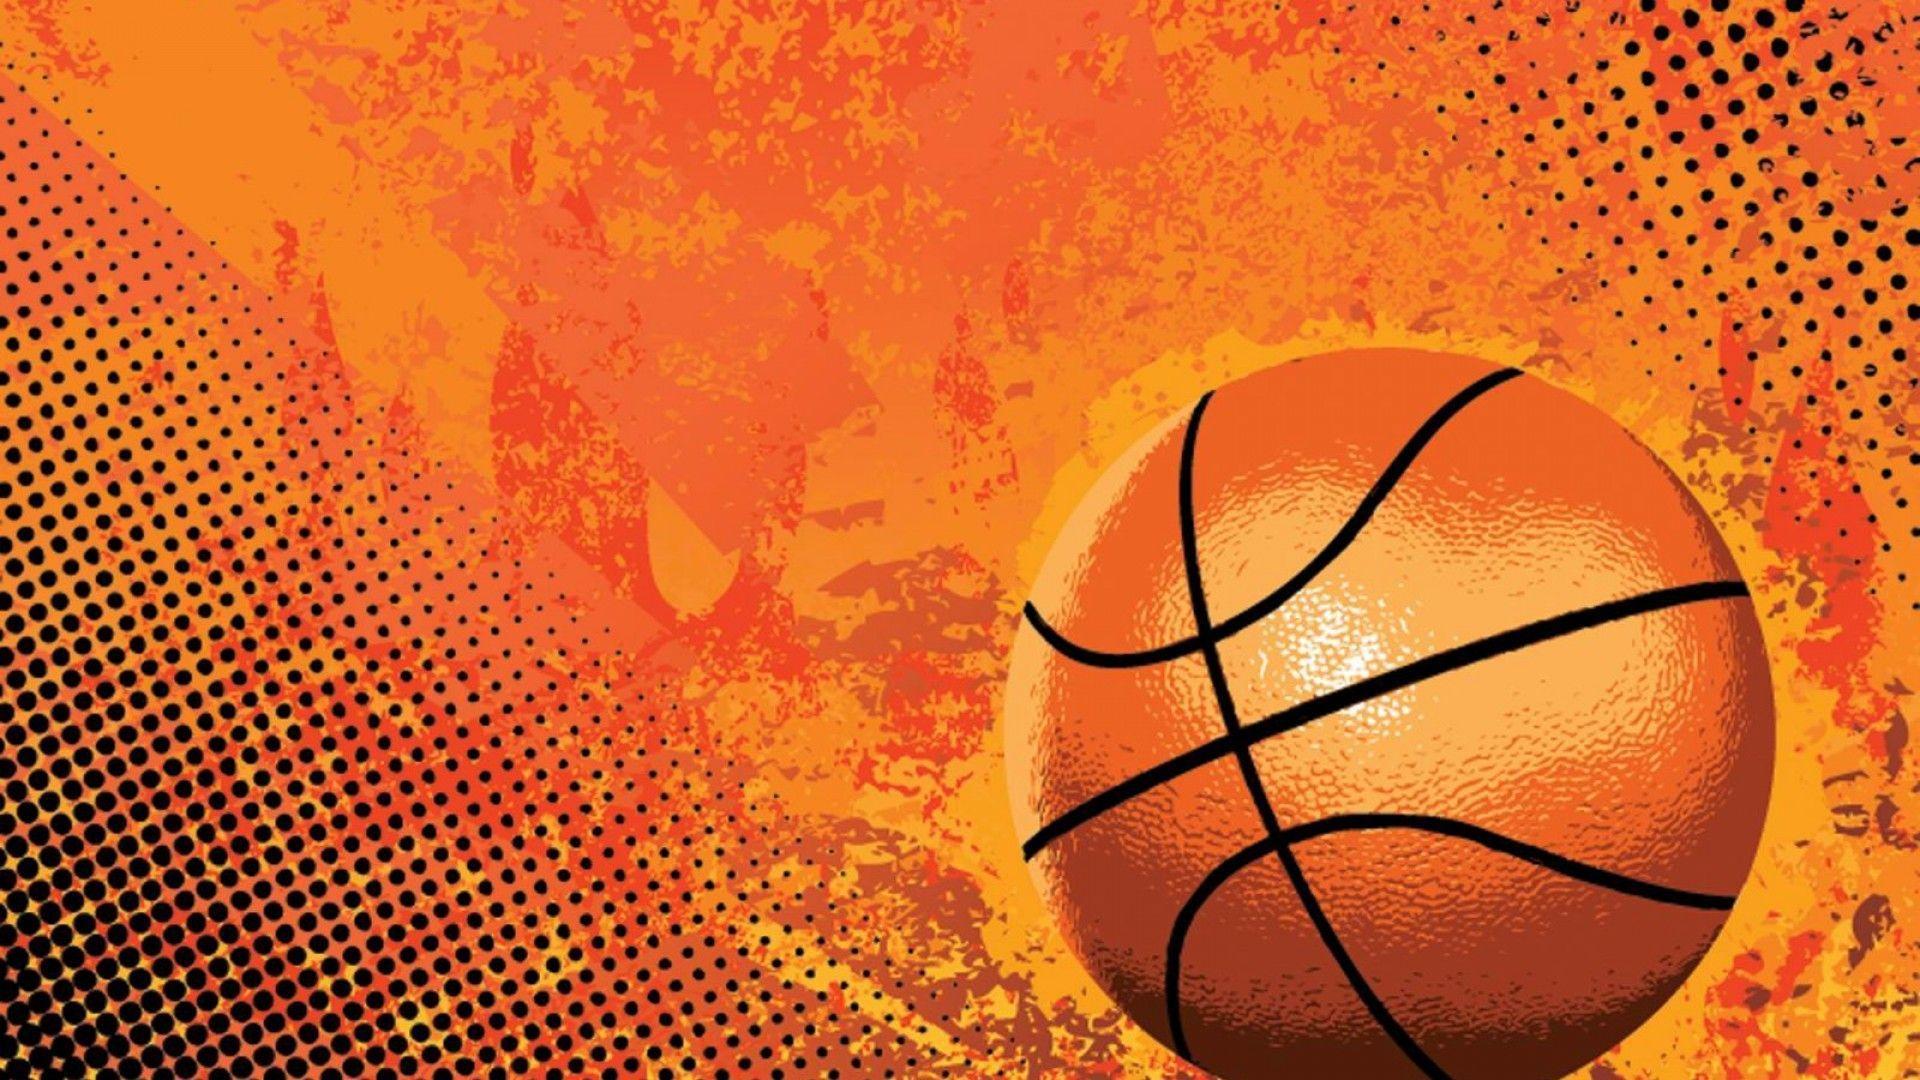 iPhone Basketball Wallpaper